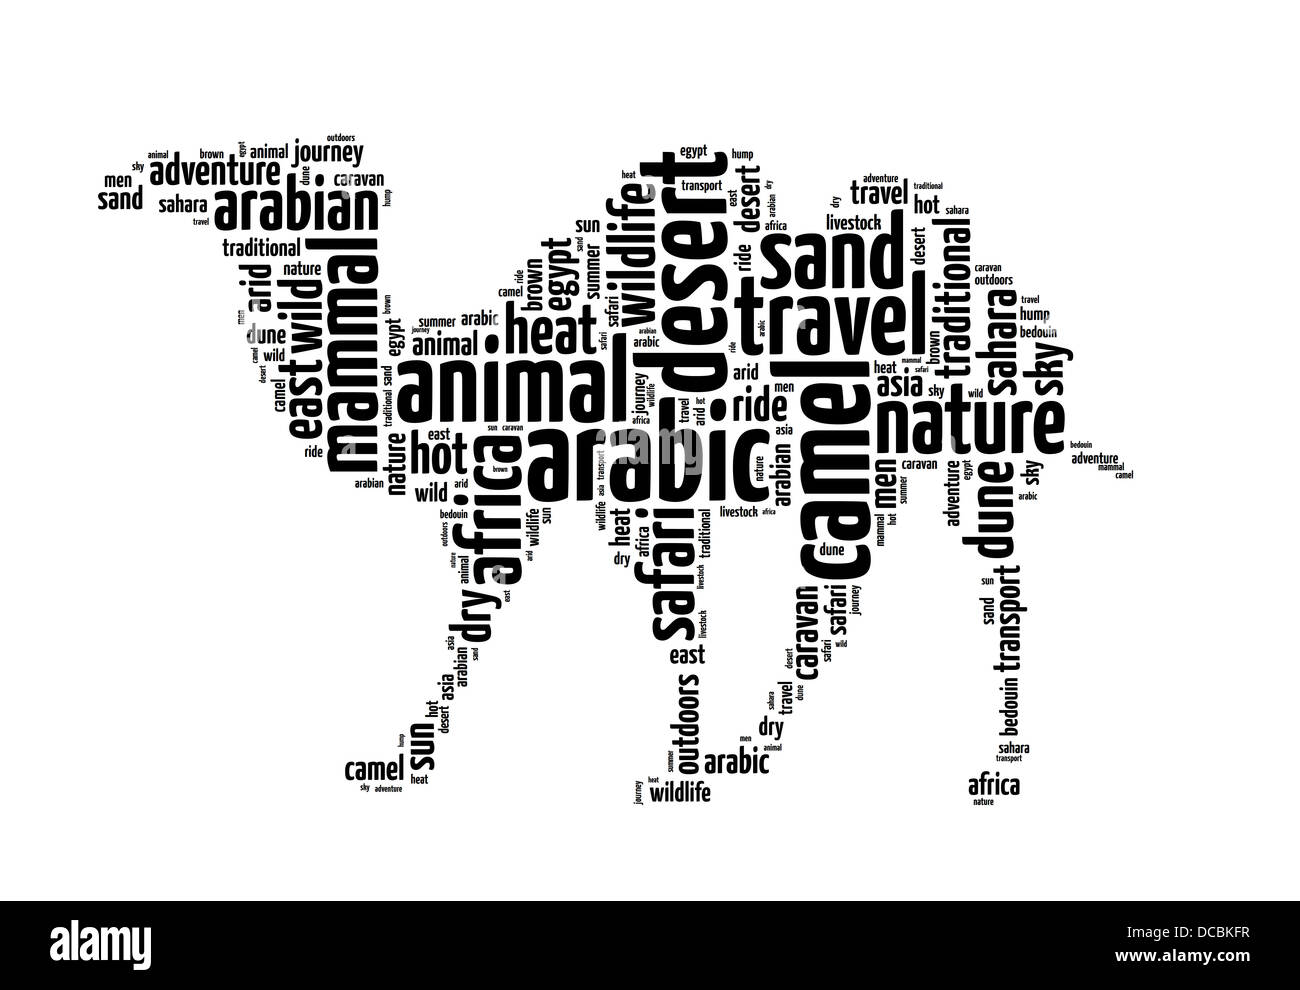 Palabras ilustración de un camello en fondo blanco. Foto de stock